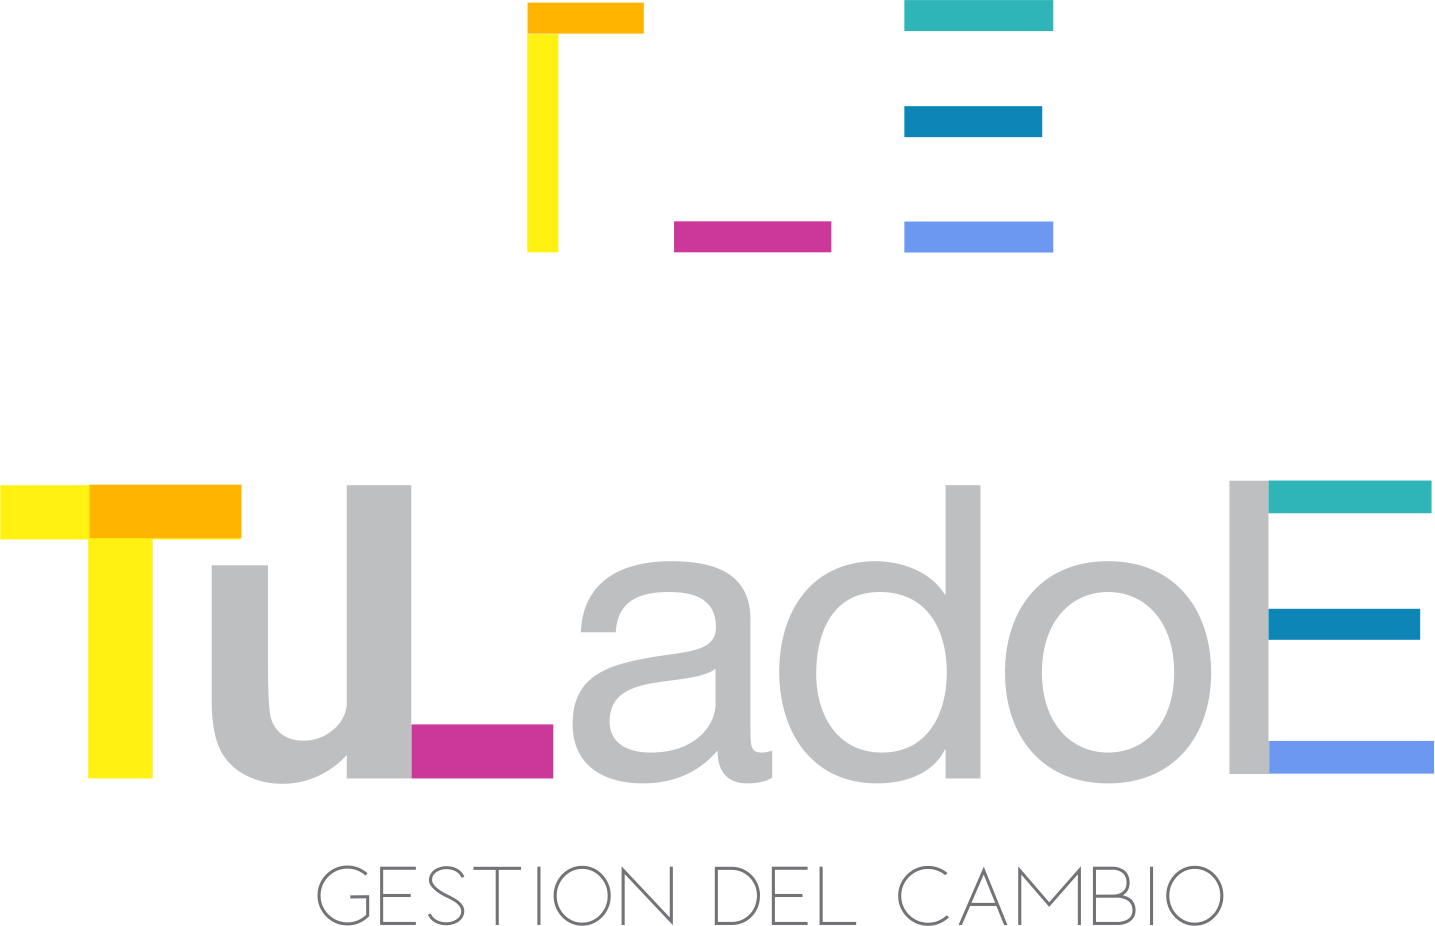 Isologo y logotipo de TuLadoE, con el lema 